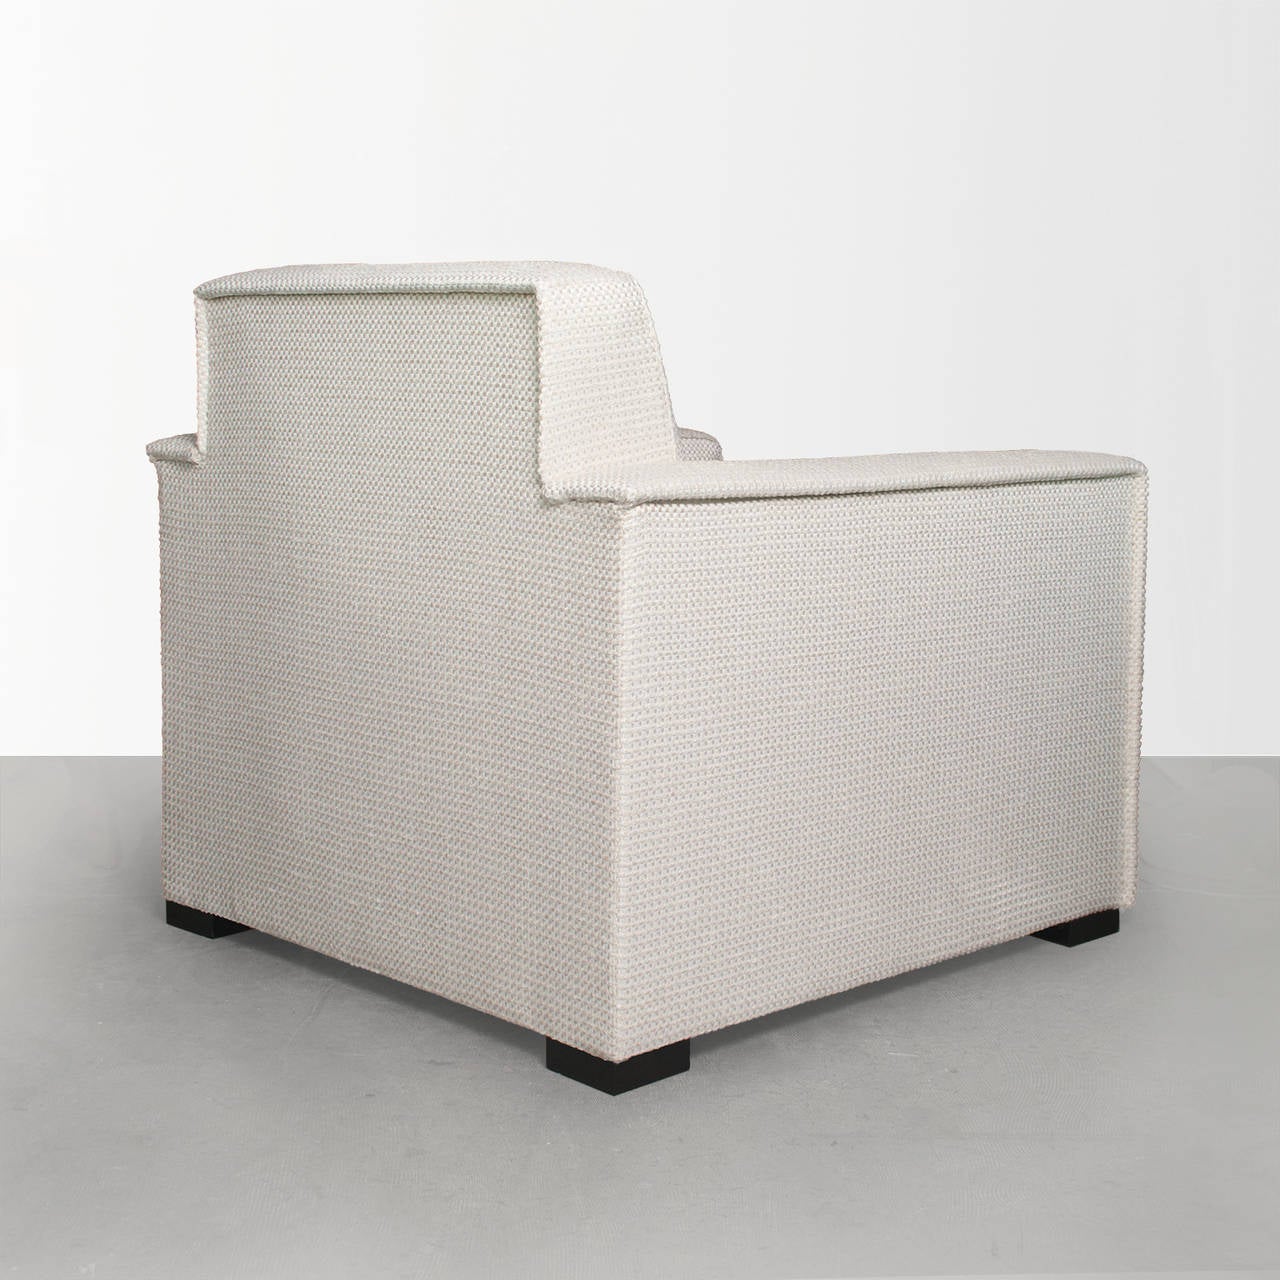 Lacquered Scandinavian Modern Lounge Chair by Designer Artist Jules Schyl, Sweden, 1930s